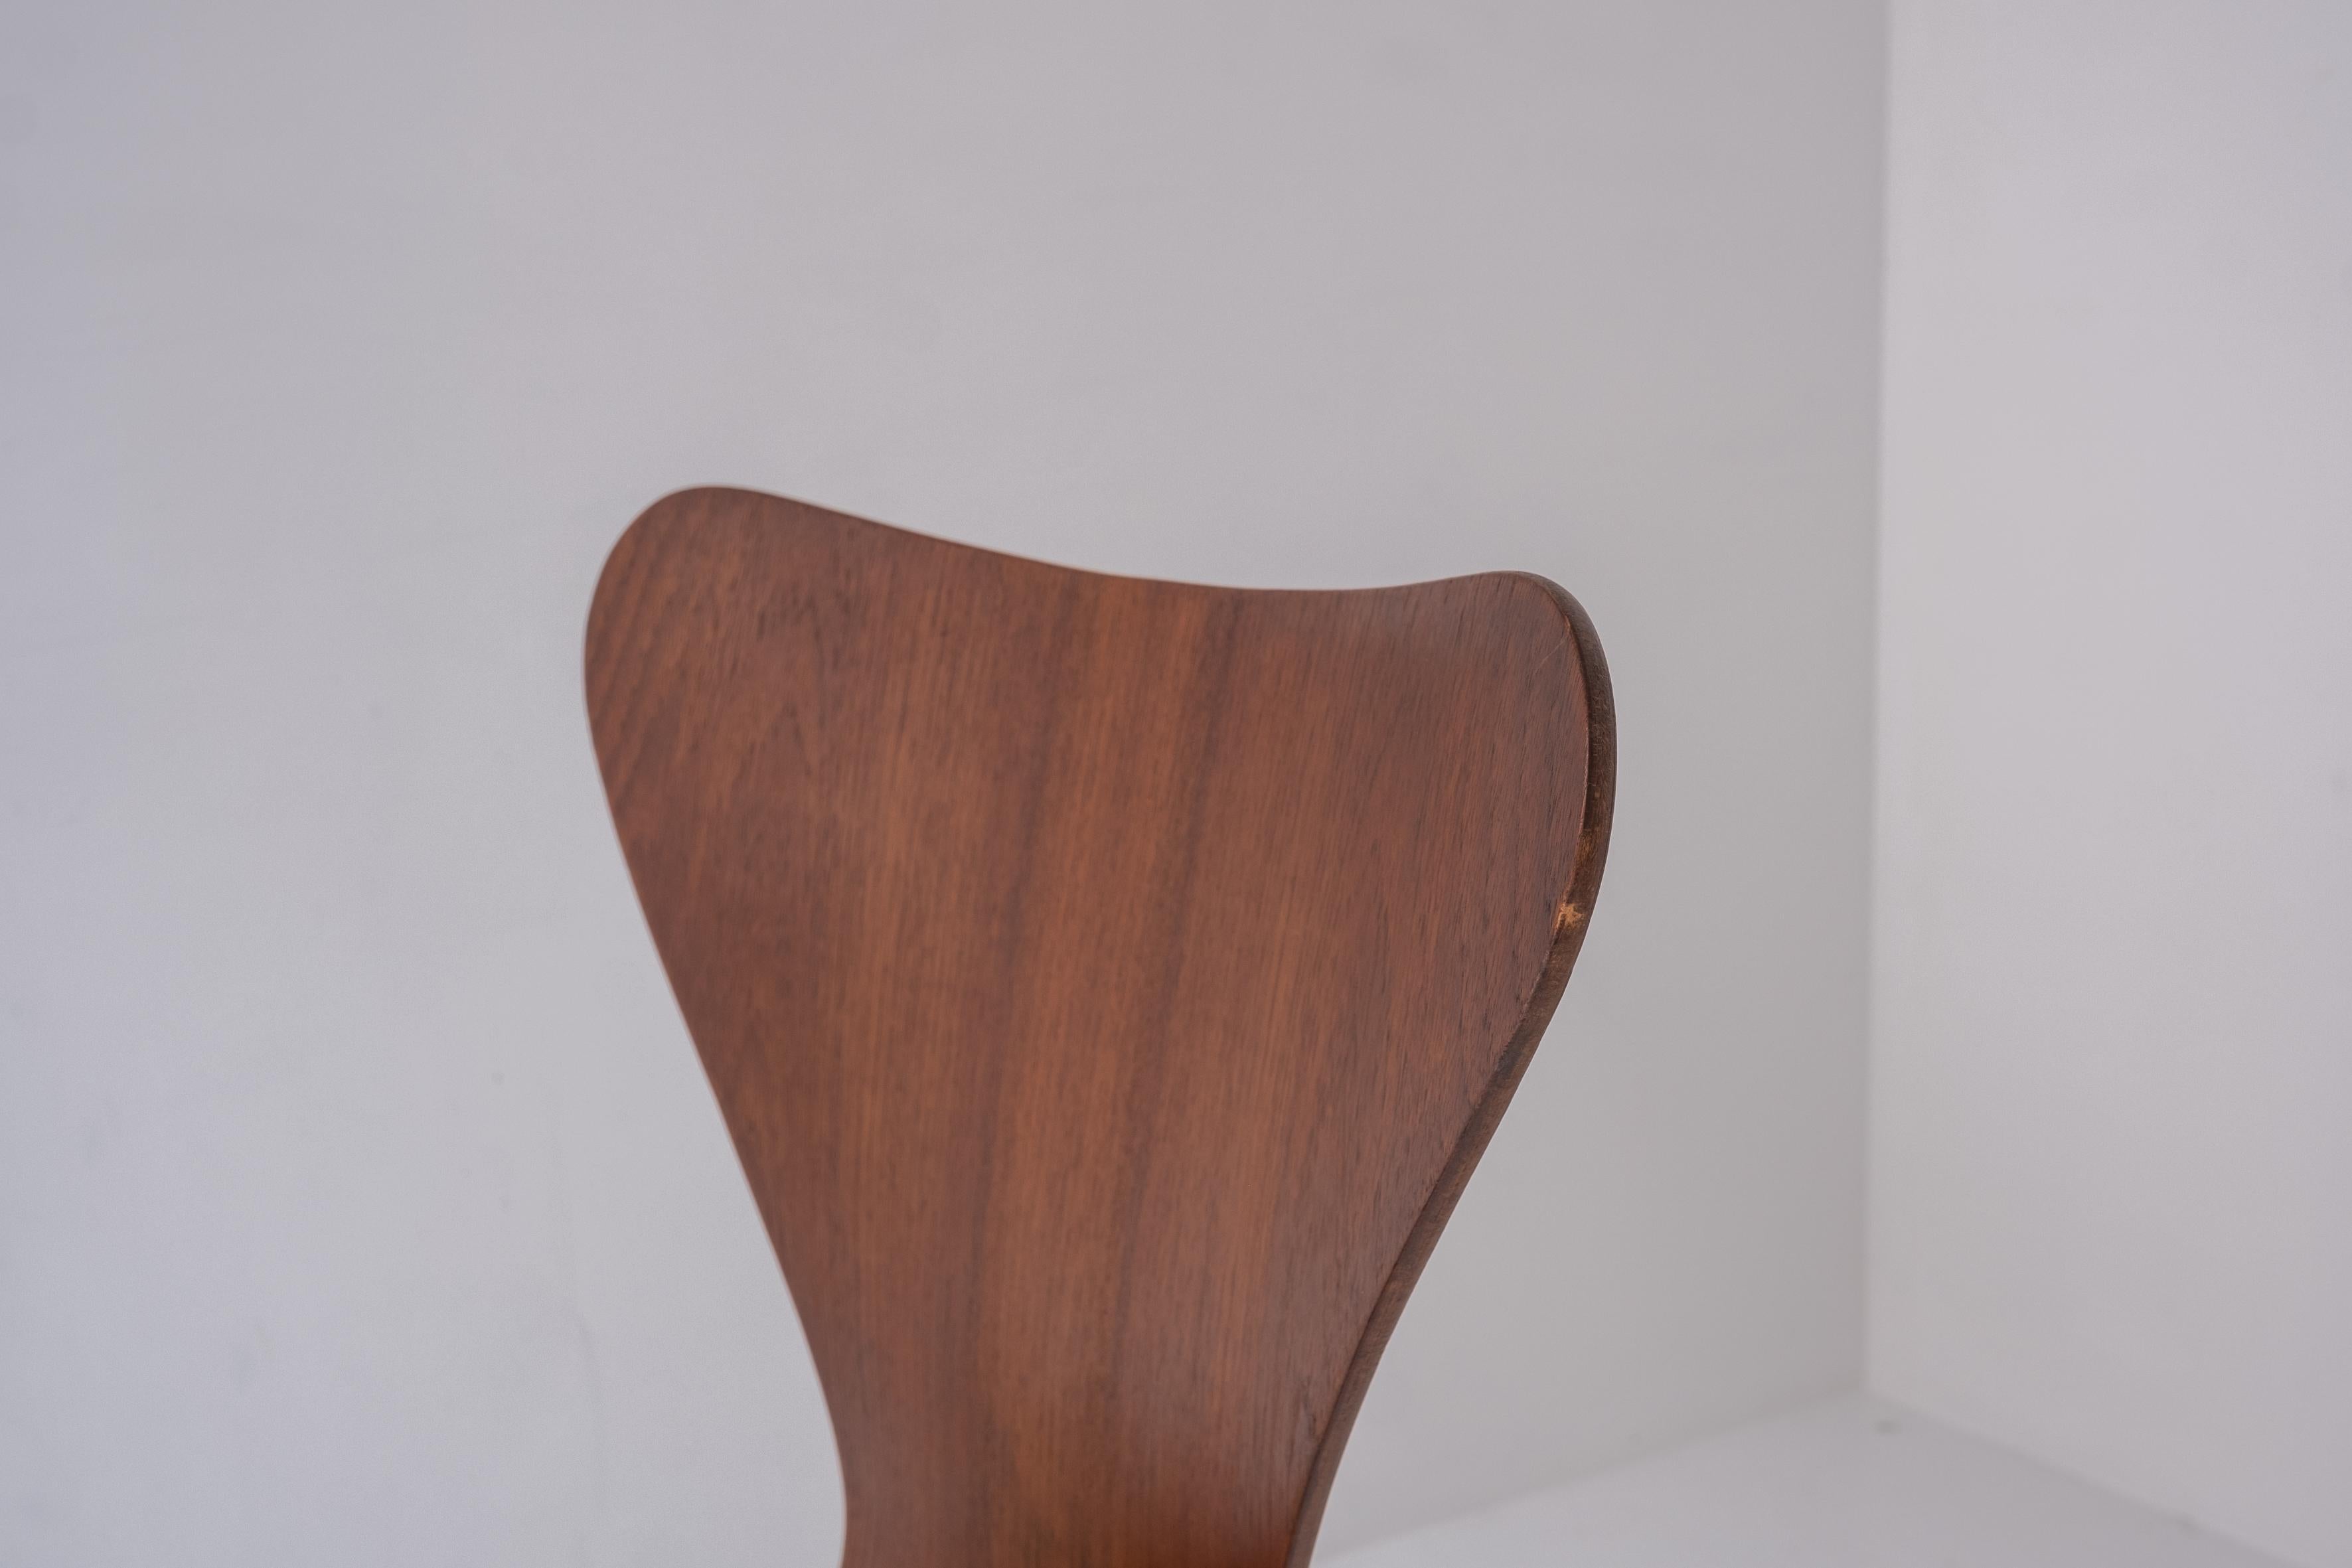 Mid-20th Century ‘3117’ Swivel Desk Chair by Arne Jacobsen for Fritz Hansen, Denmark, 1955